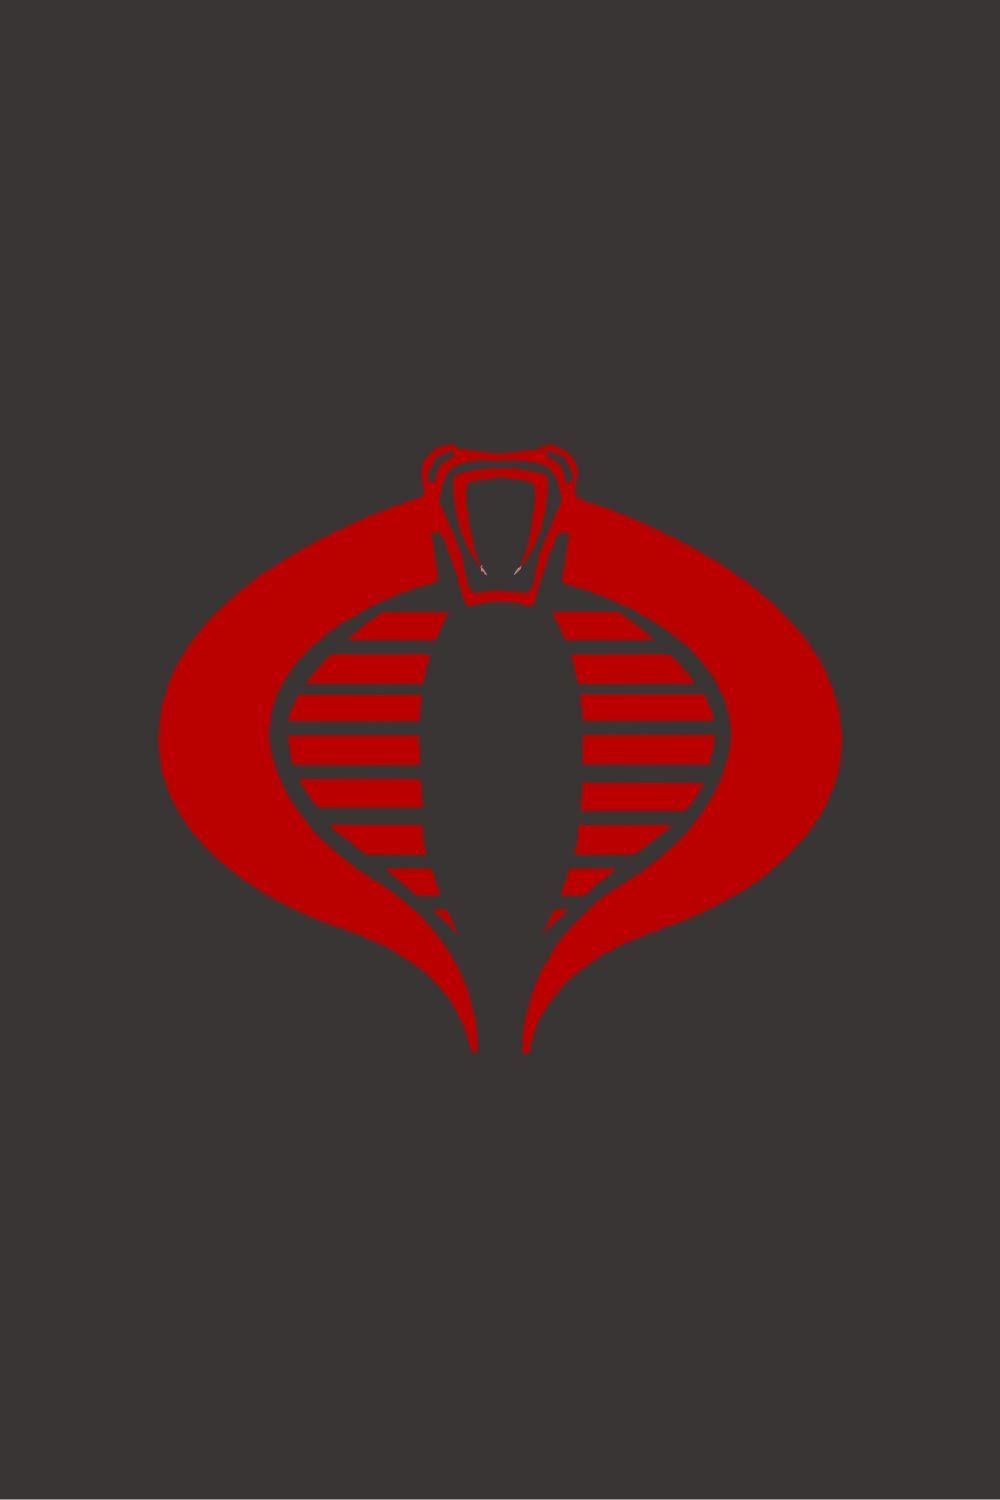 Firefly Cobra Enemy Logo. Gi joe, Cobra art, Gi joe cobra